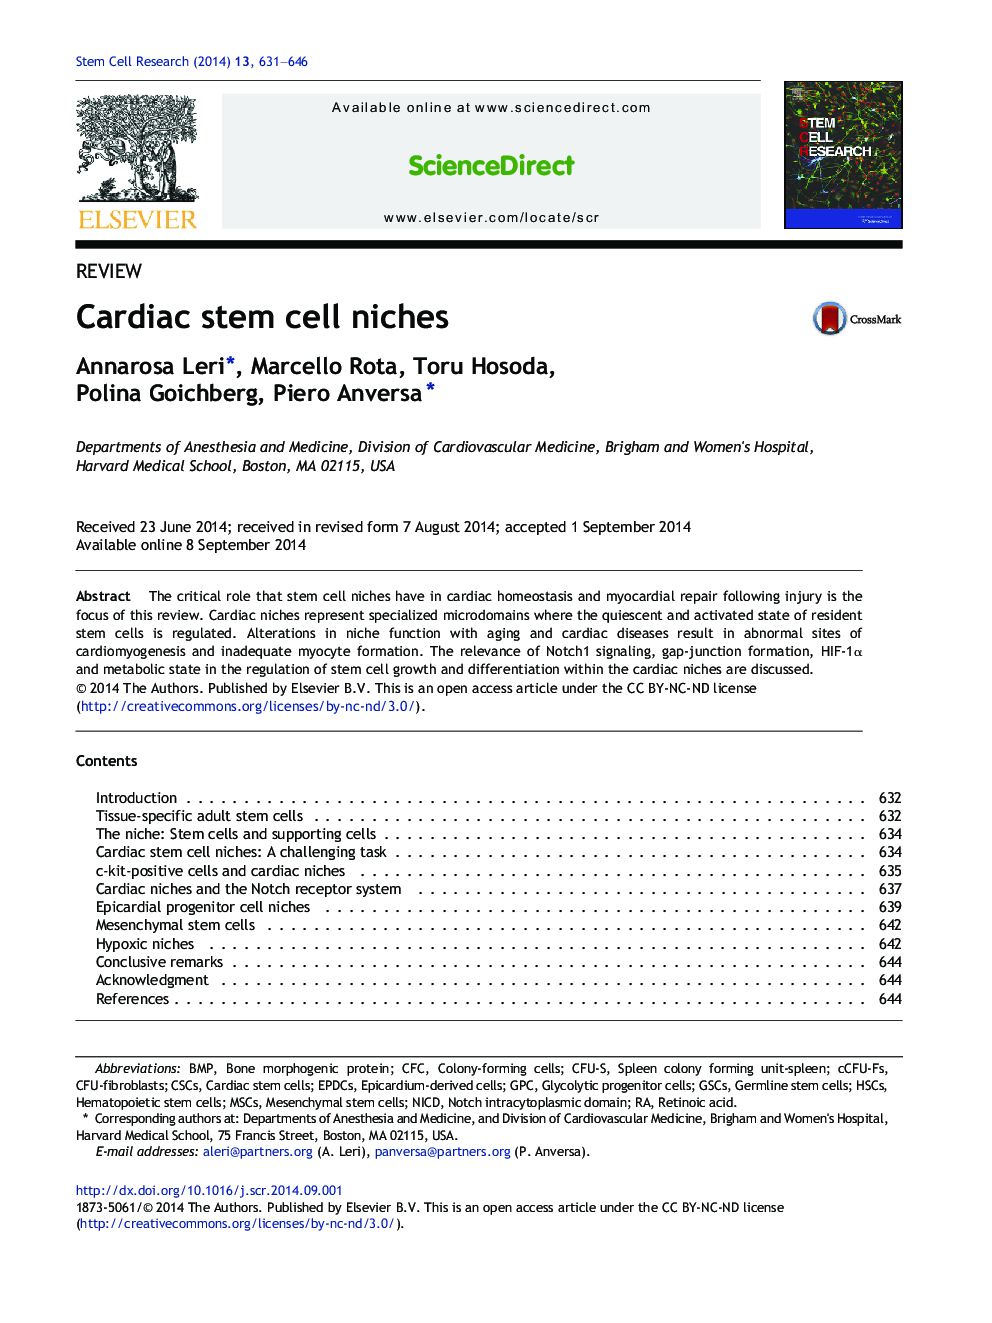 Cardiac stem cell niches